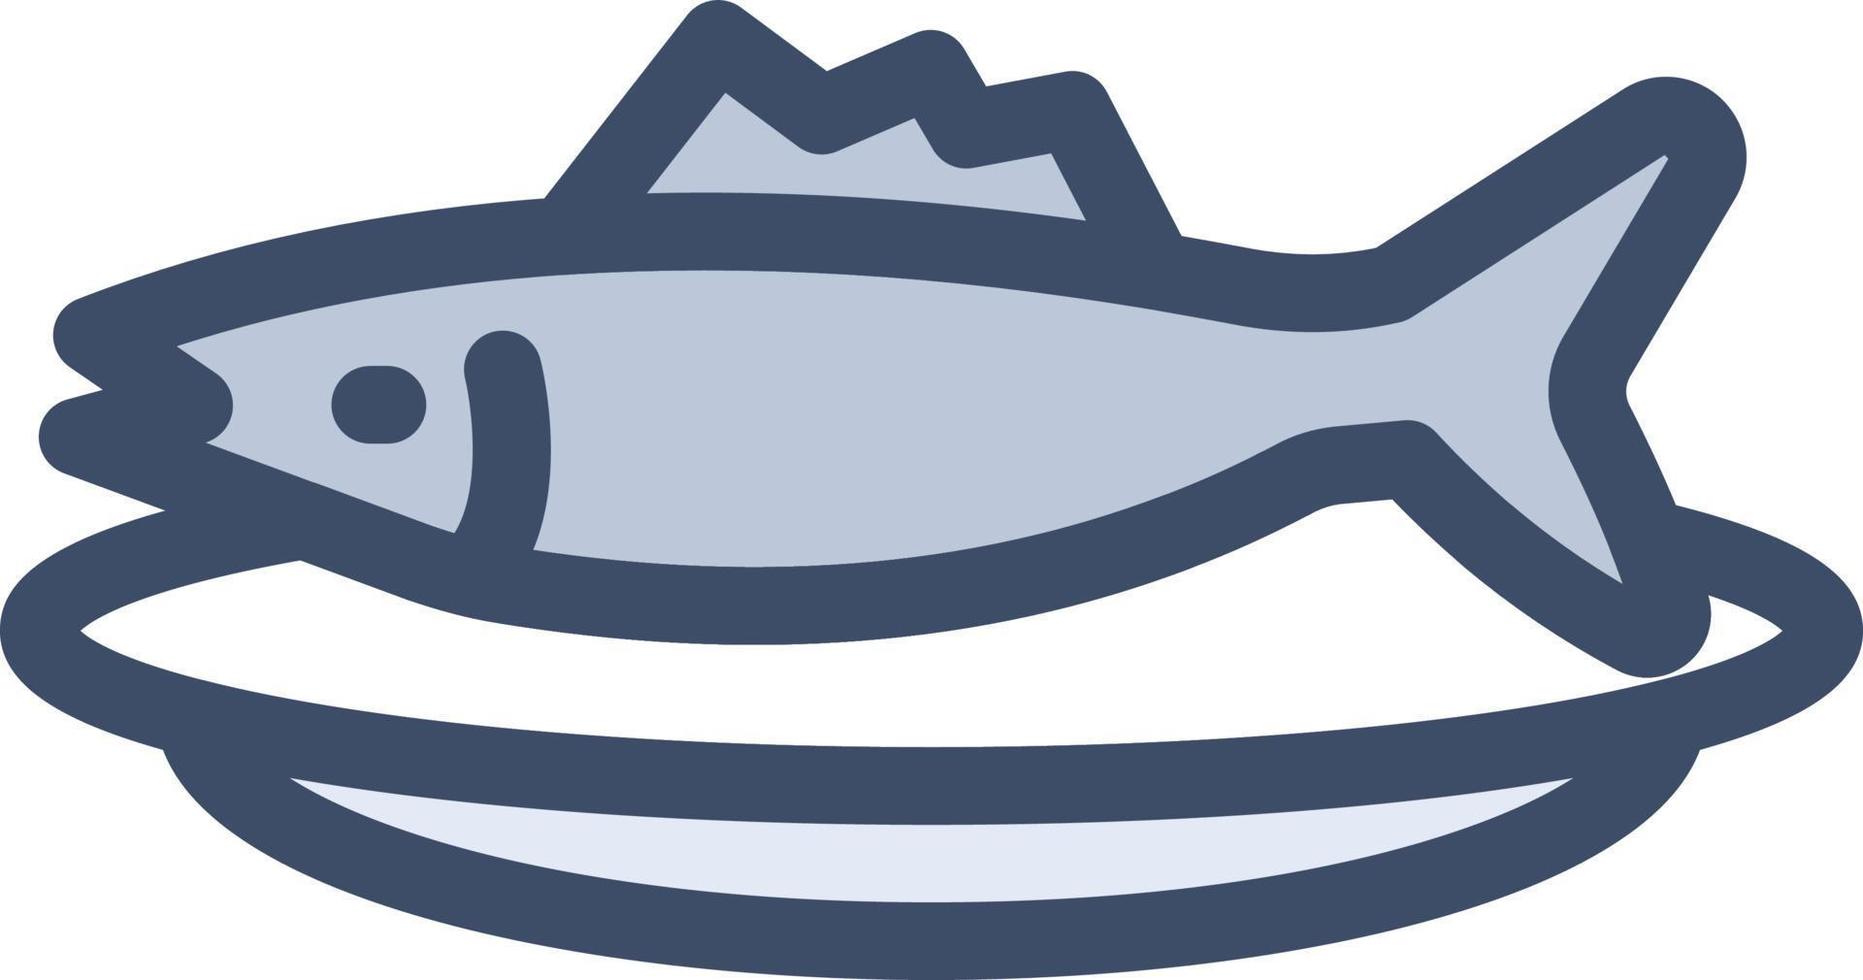 illustrazione vettoriale di pesce su uno sfondo. simboli di qualità premium. icone vettoriali per il concetto e la progettazione grafica.